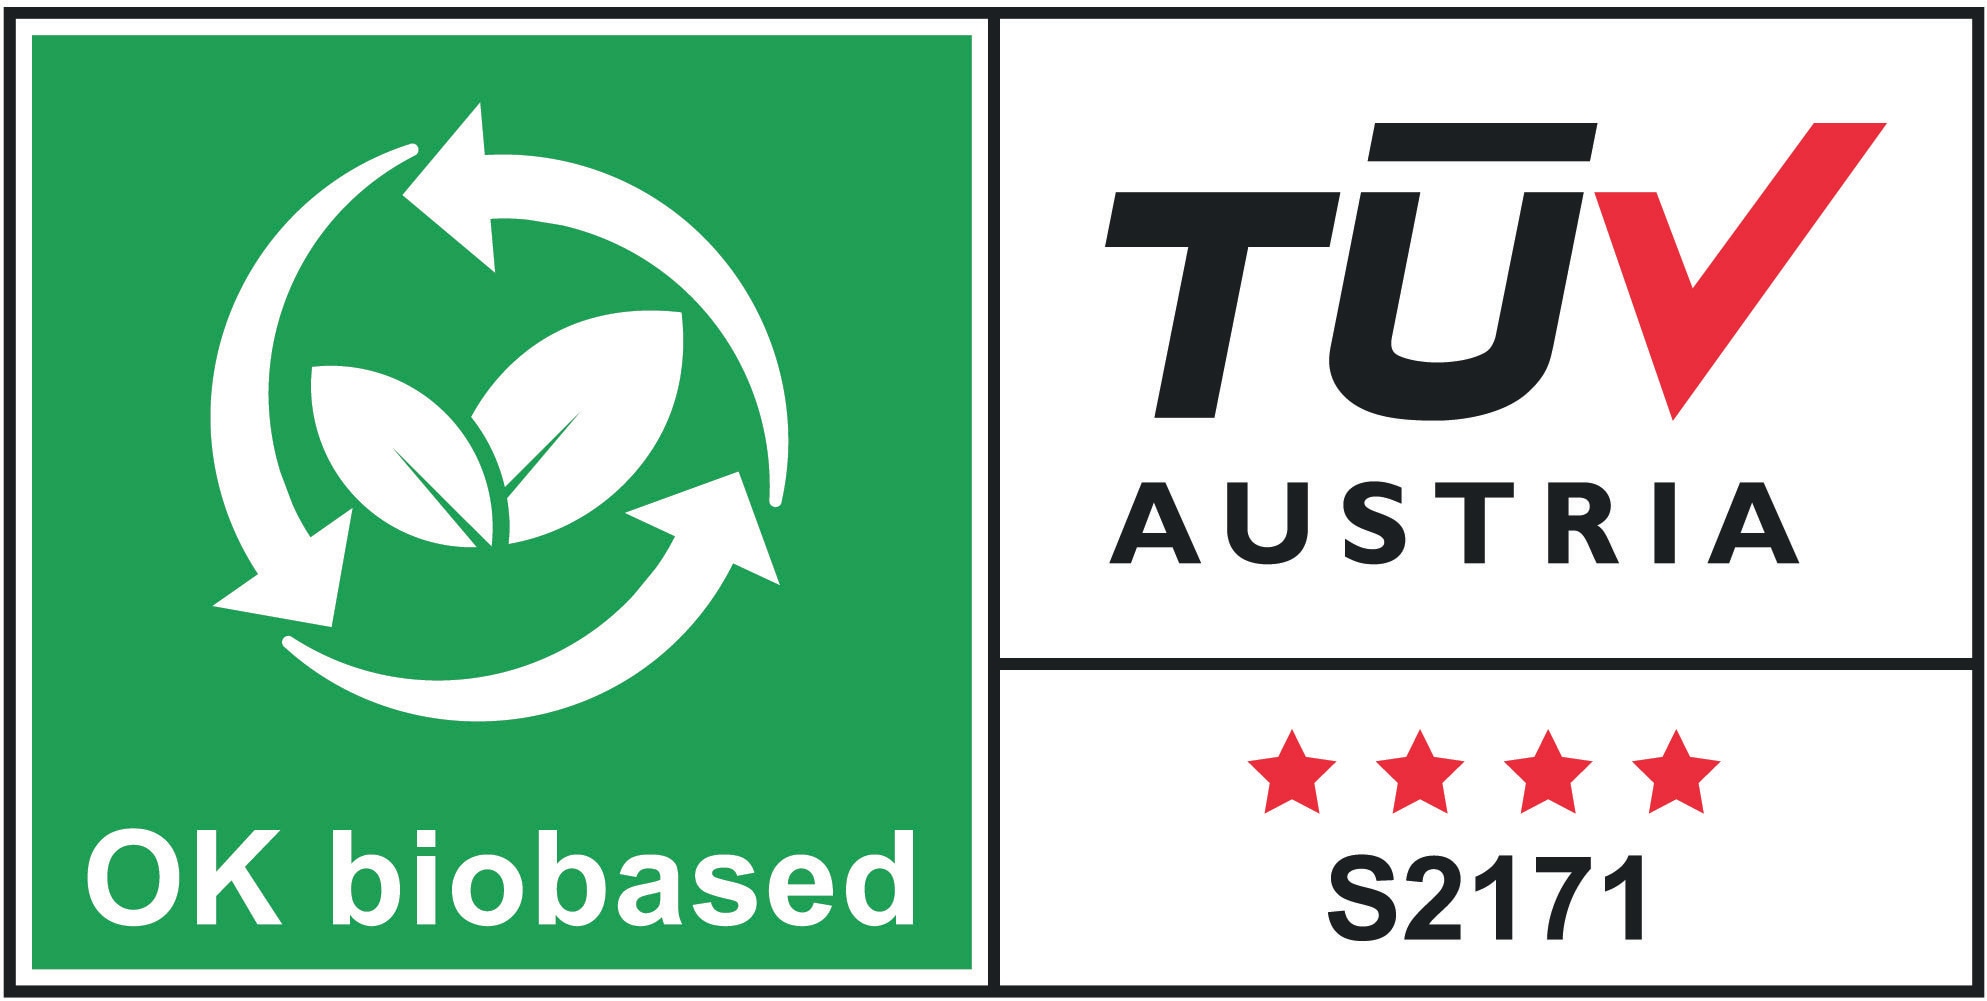 Sertifisert som OK biobased av TÜV Austria